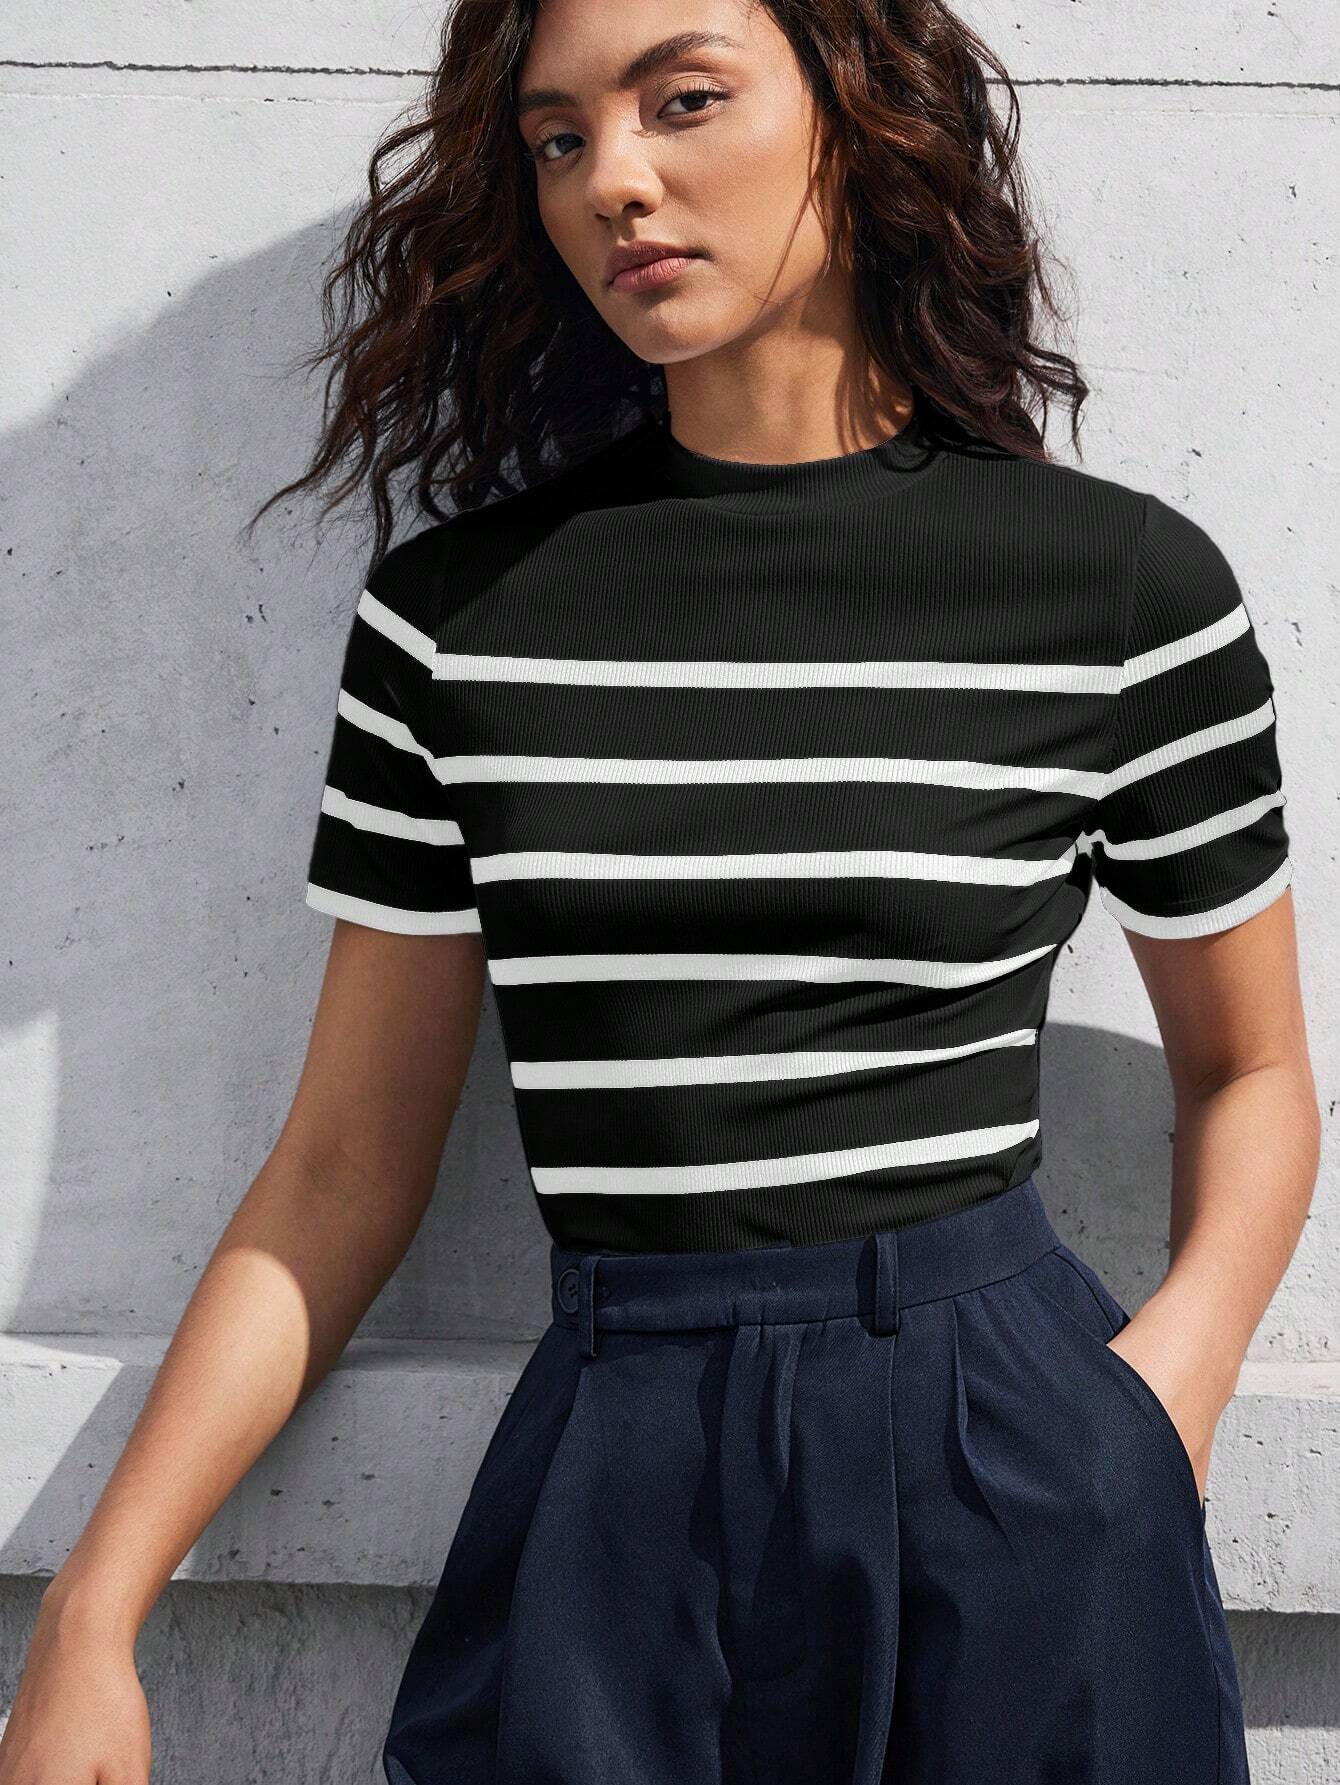 BIZwear Women's Contrast Striped Stand Collar T-Shirt